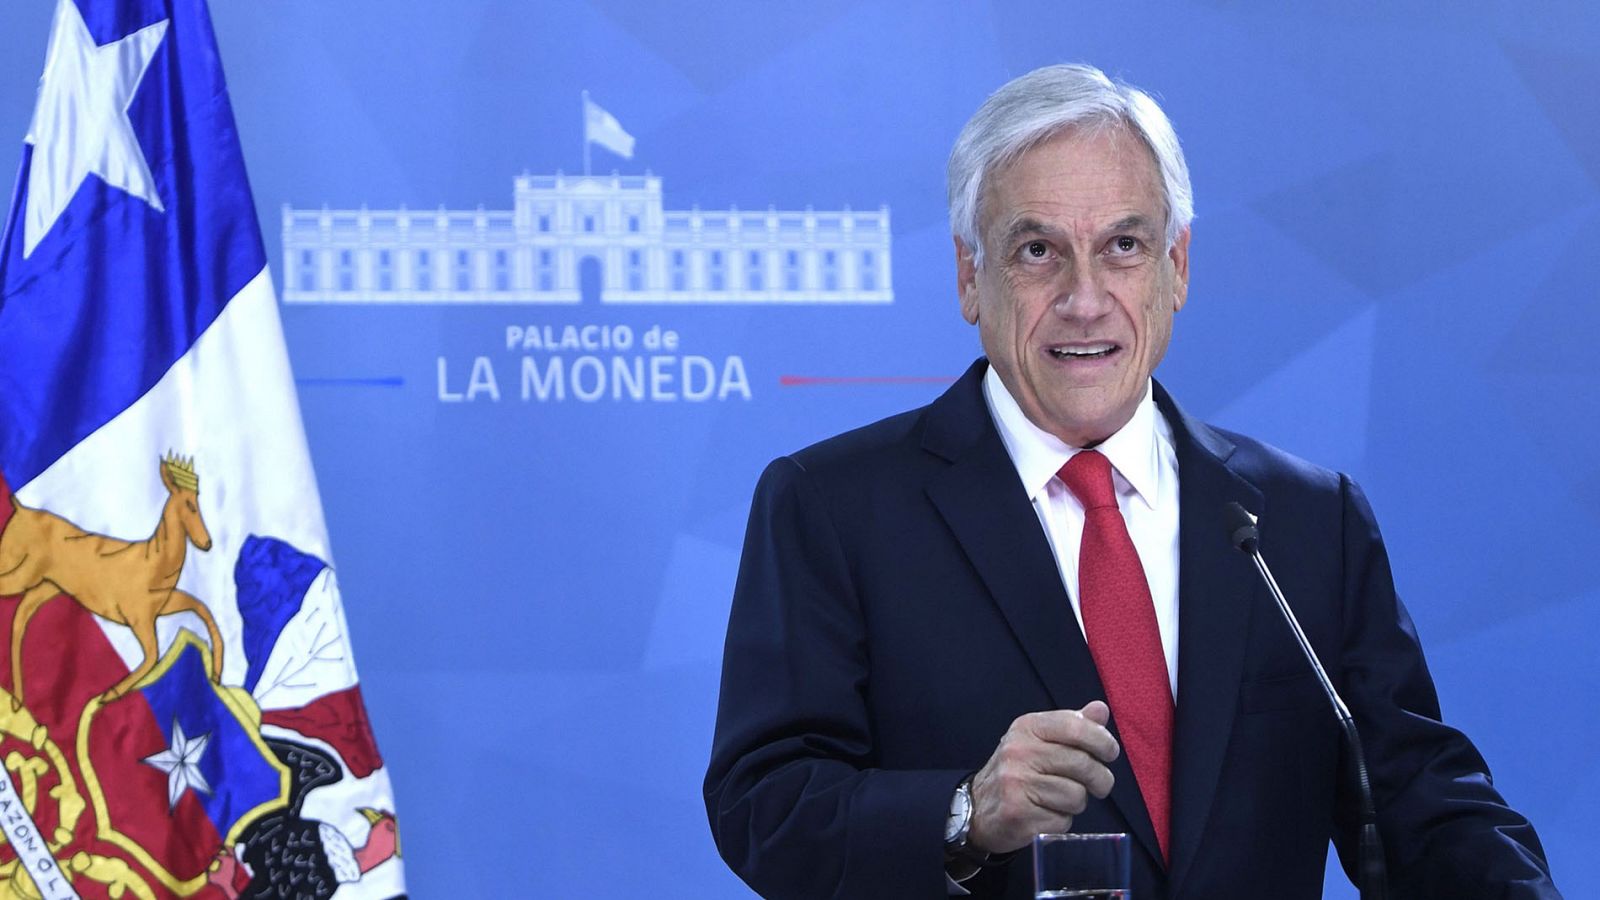 Protestas Chile | Piñera anuncia un paquete de medidas sociales para frenar las protestas - RTVE.es